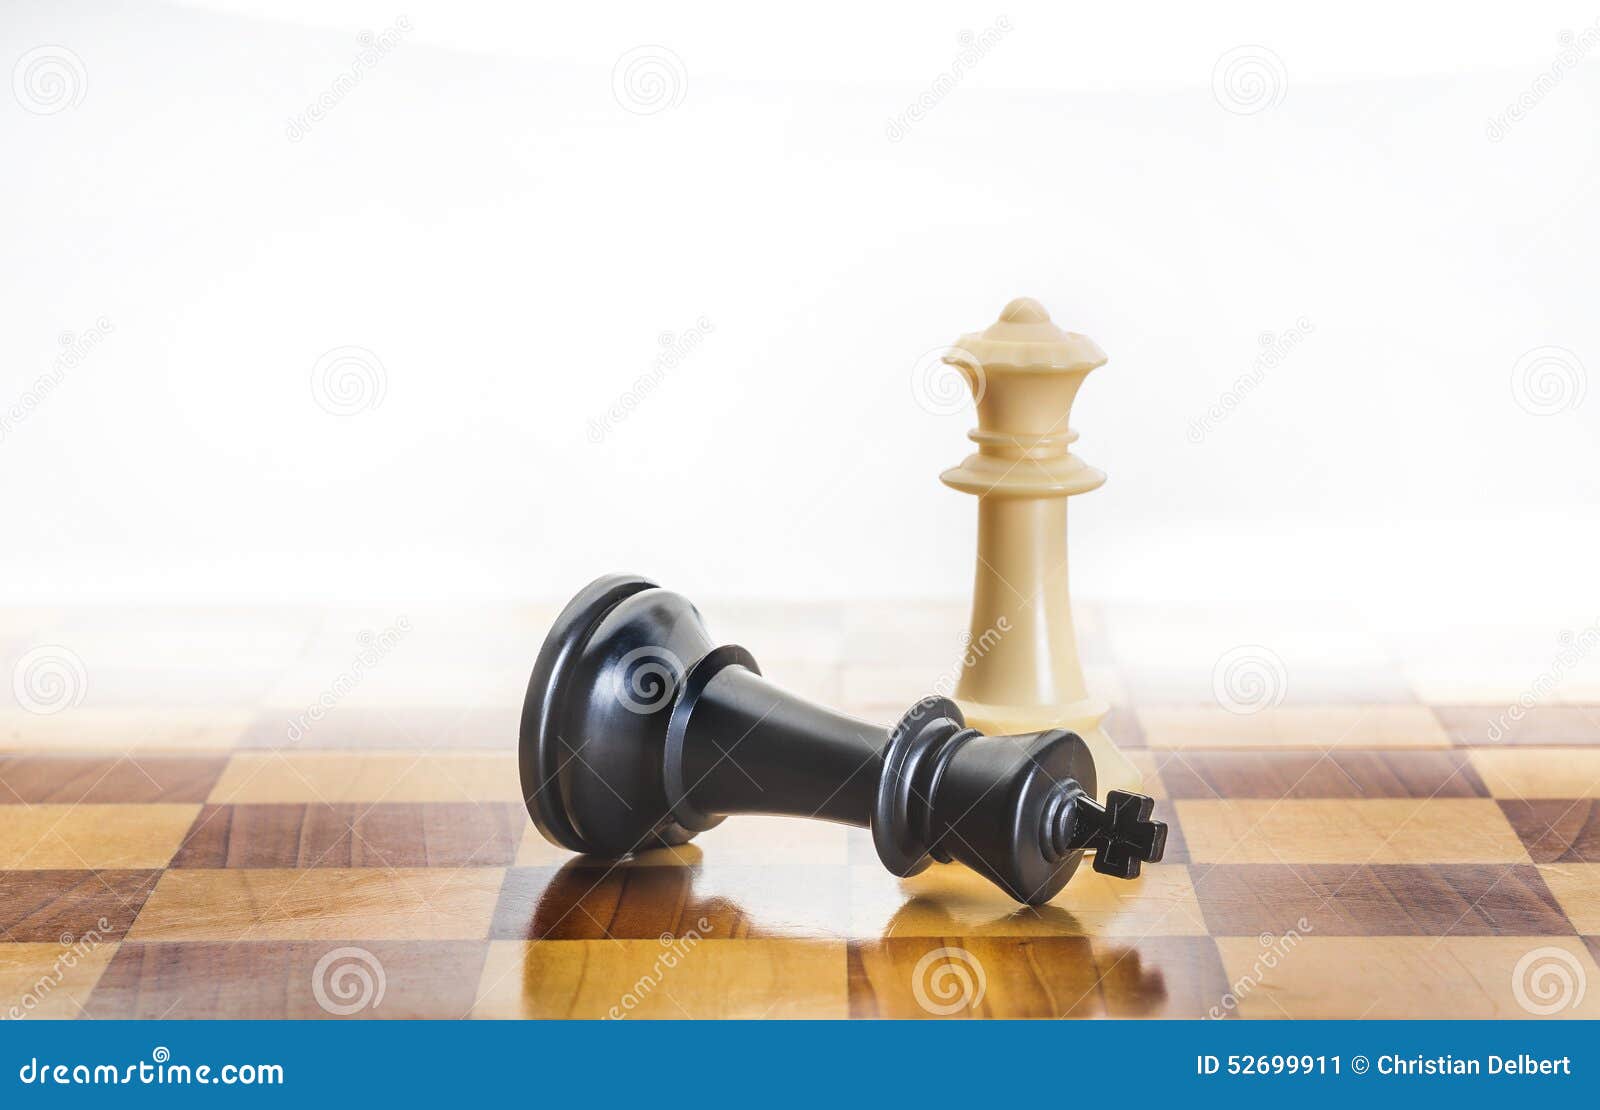 Acredite em si mesmo como um rei no xadrez para alcançar o sucesso